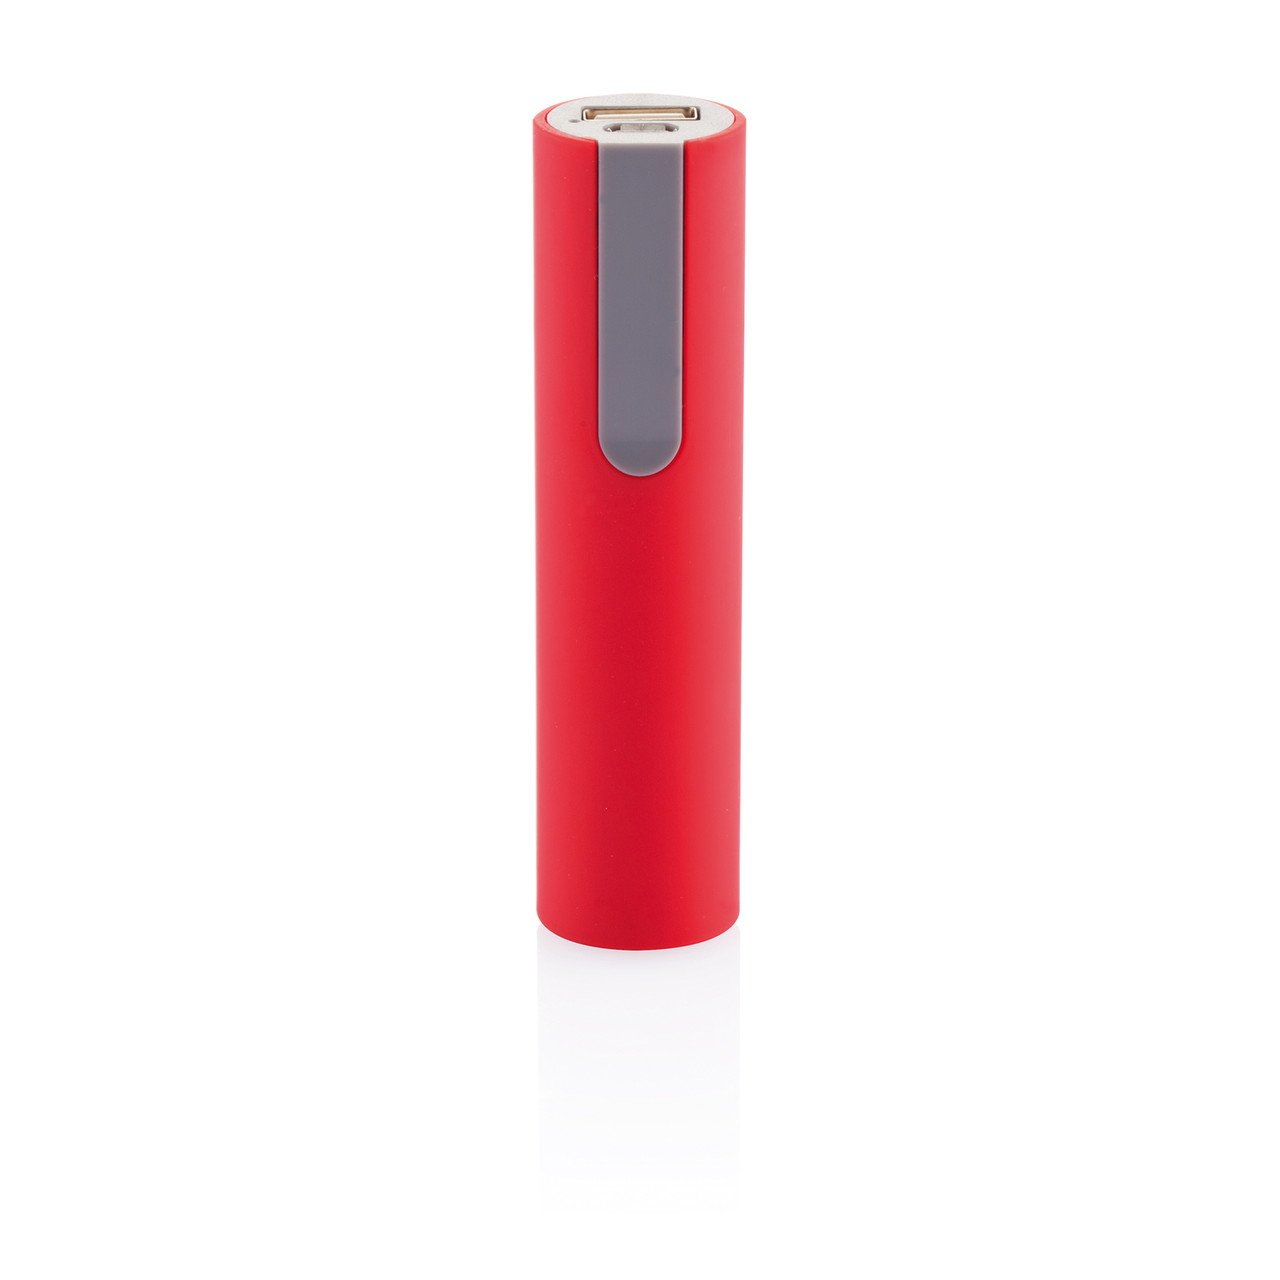 Зарядное устройство 2200 mAh, красный; серый, , высота 10 см., диаметр 2,5 см., P324.054